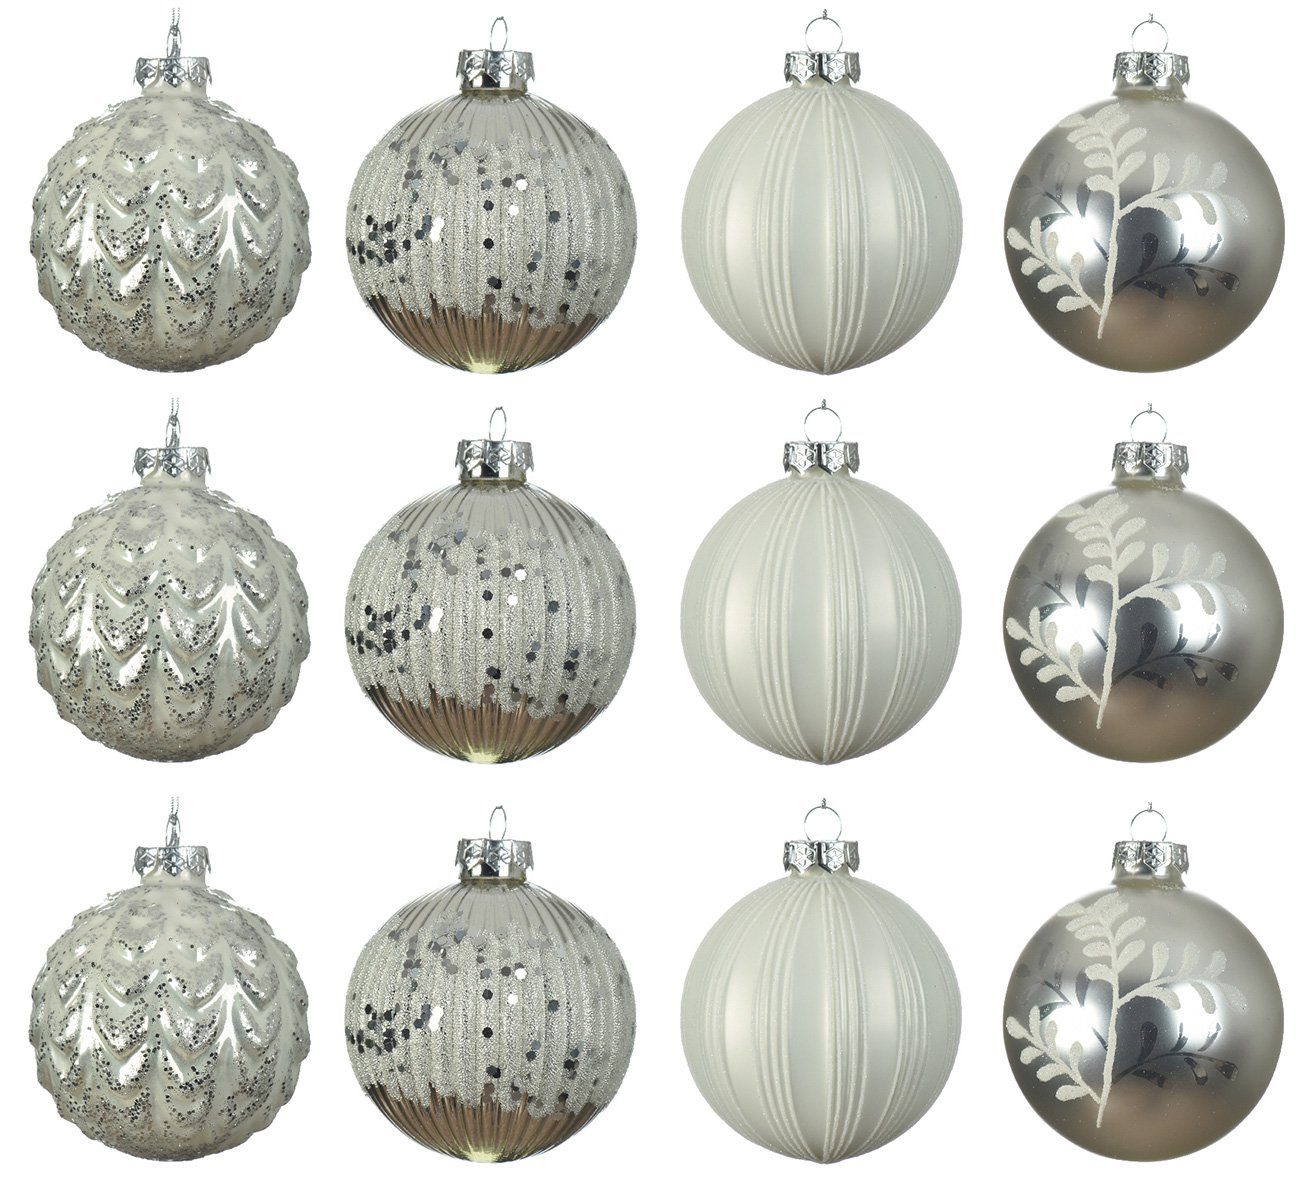 season Weihnachtsbaumkugel, Glas Streifen Muster mit 8cm Weihnachtskugeln / silber weiß decorations Decoris / 12er Set